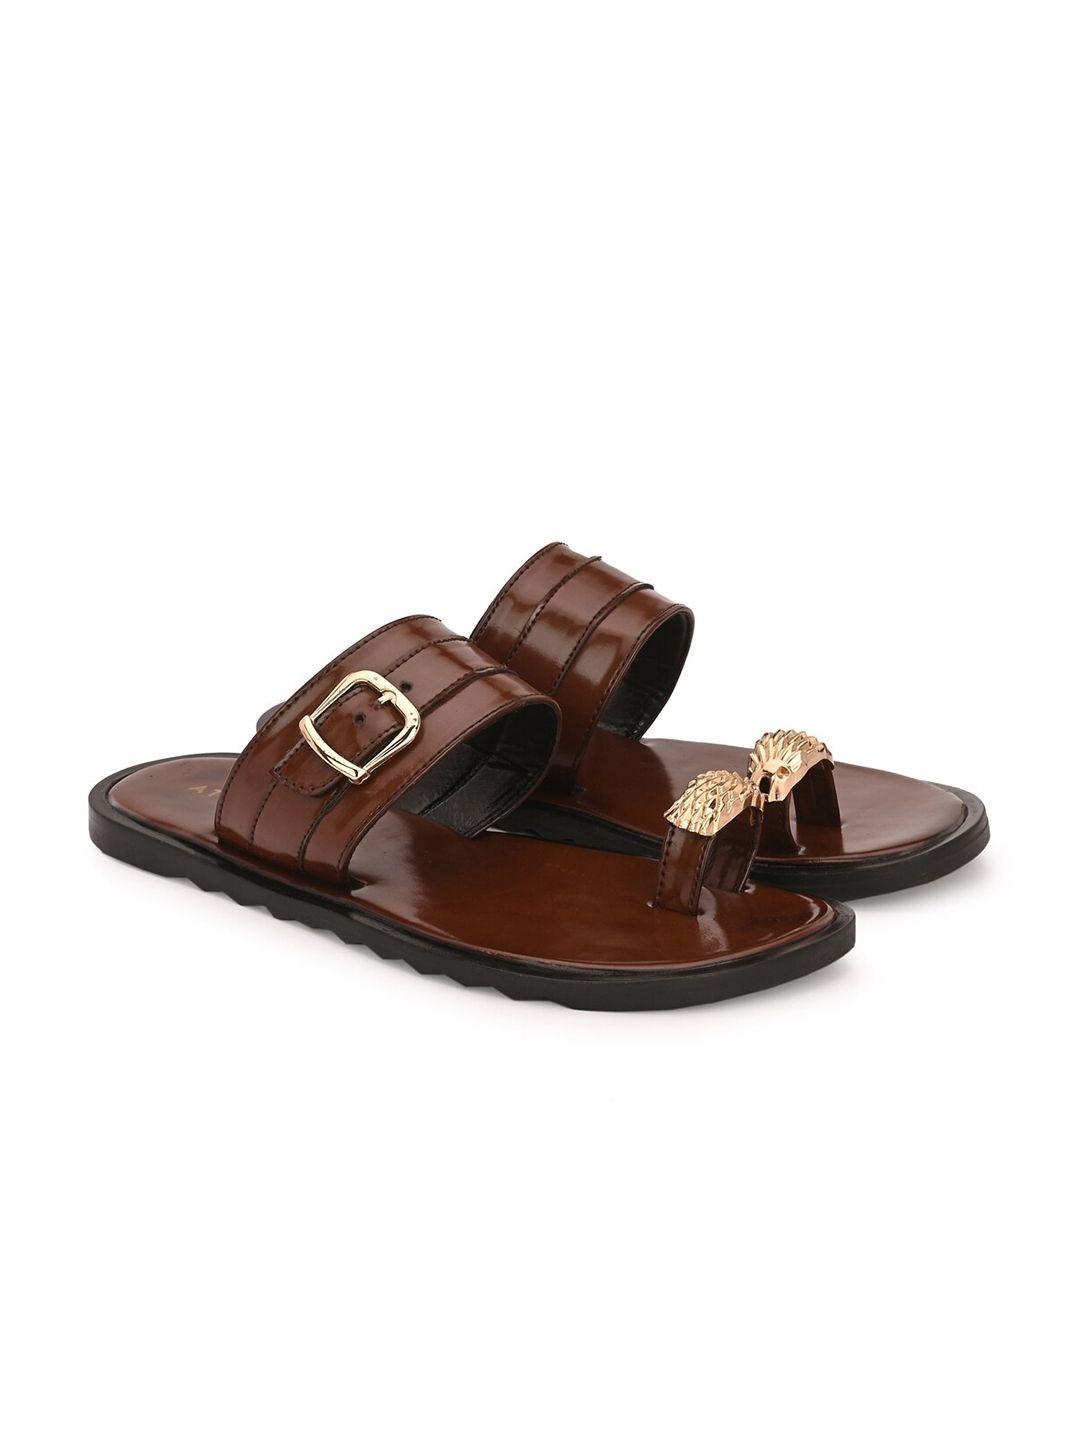 attitudist men leather comfort sandals